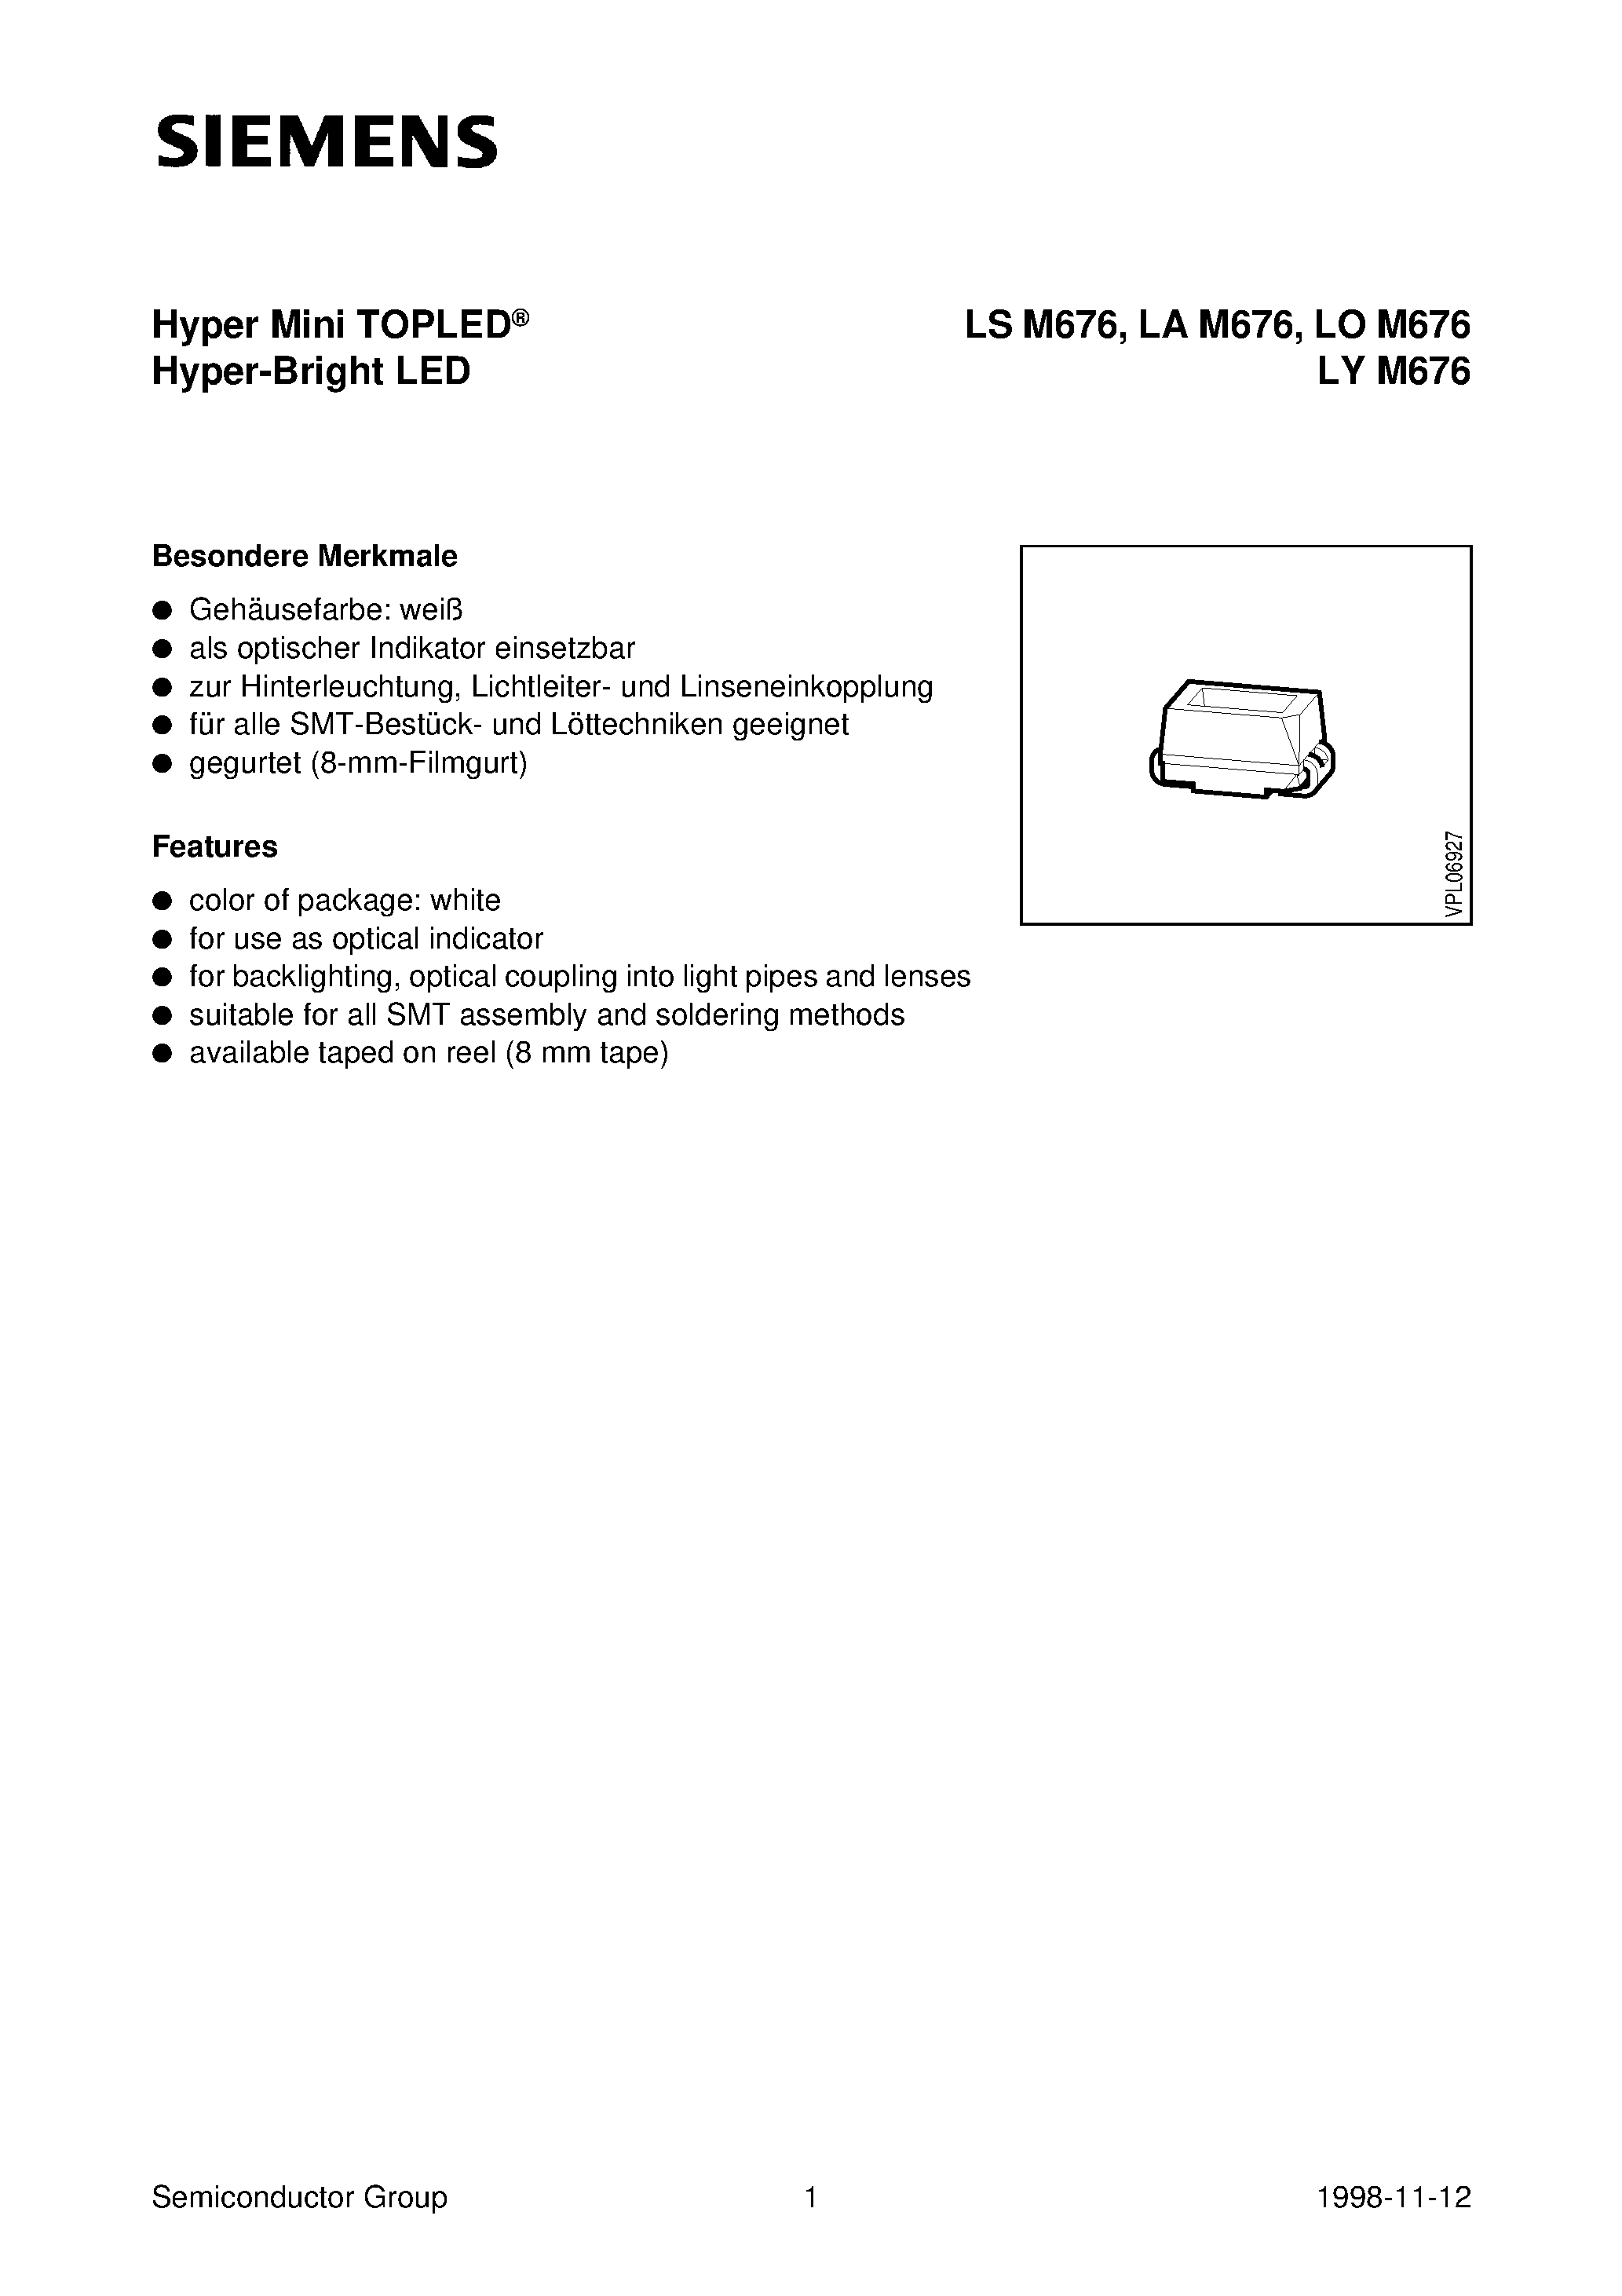 Даташит LYM676-Q - Hyper Mini TOPLED Hyper-Bright LED страница 1